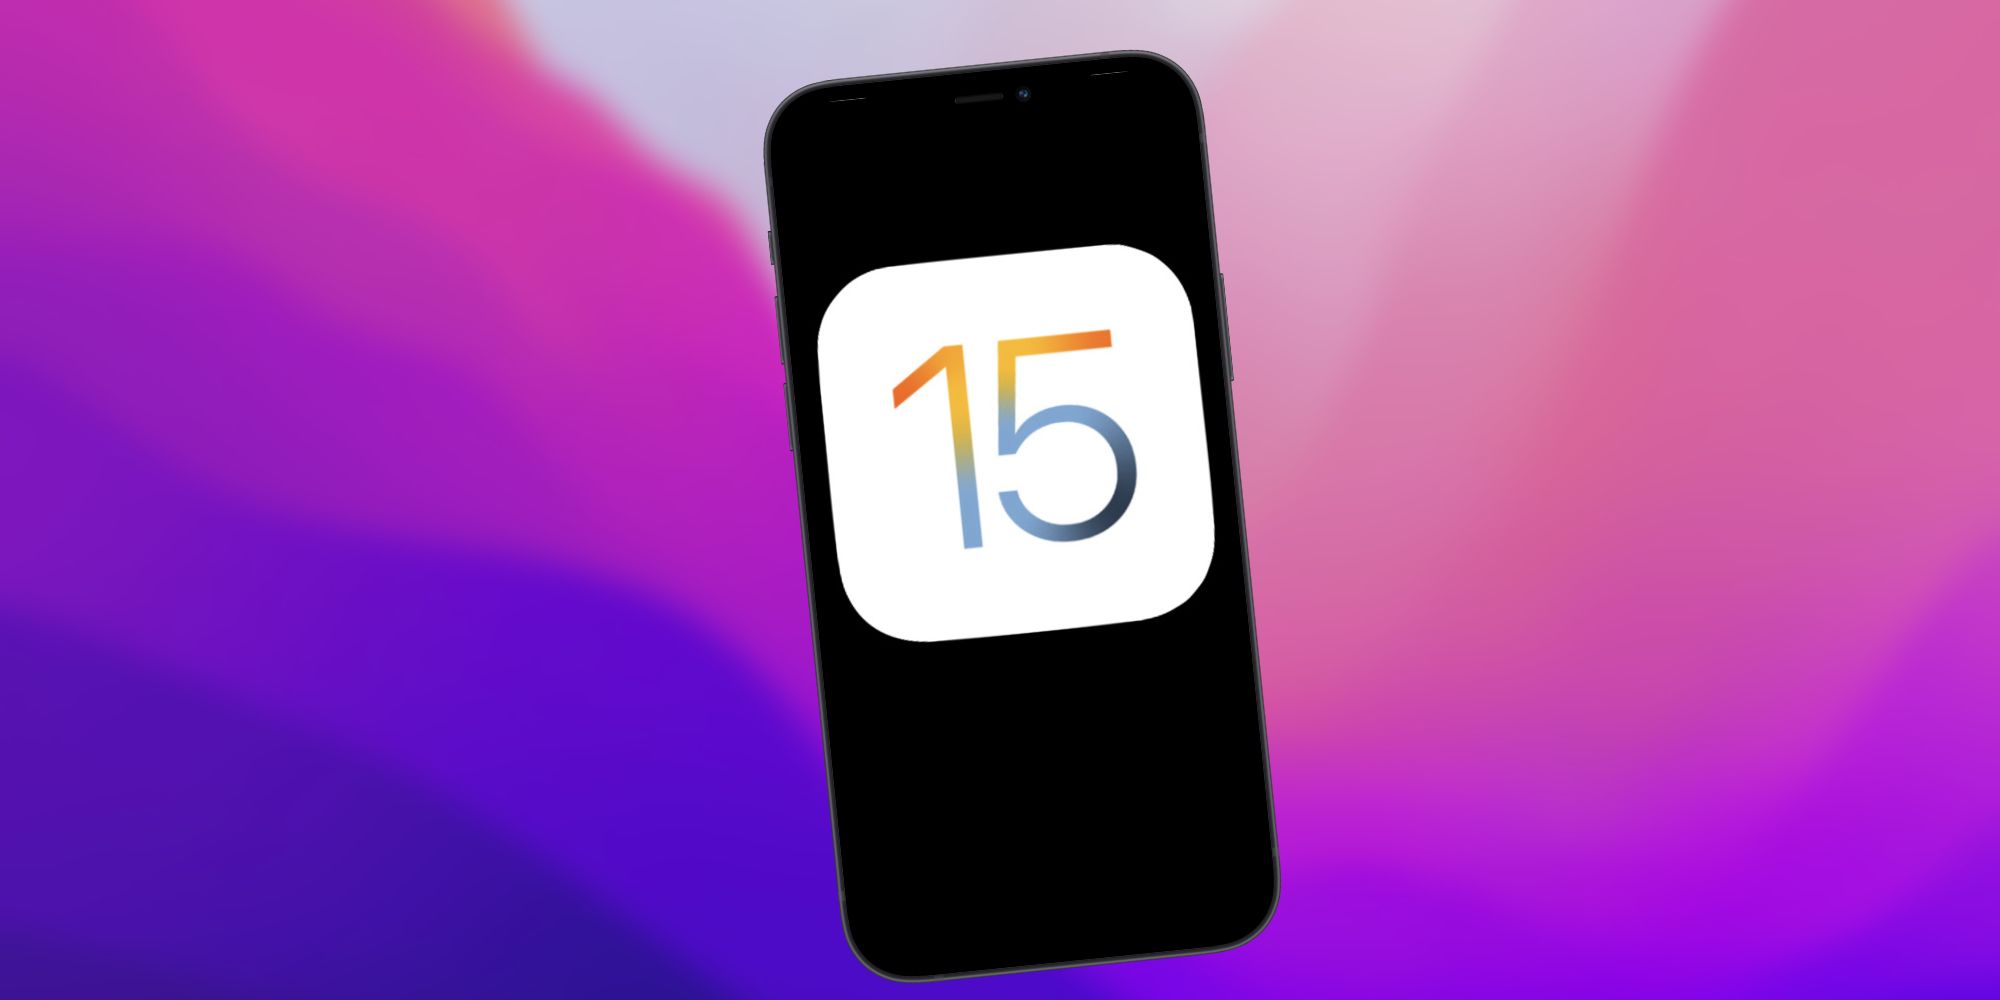 iOS 15 logo on an iPhone